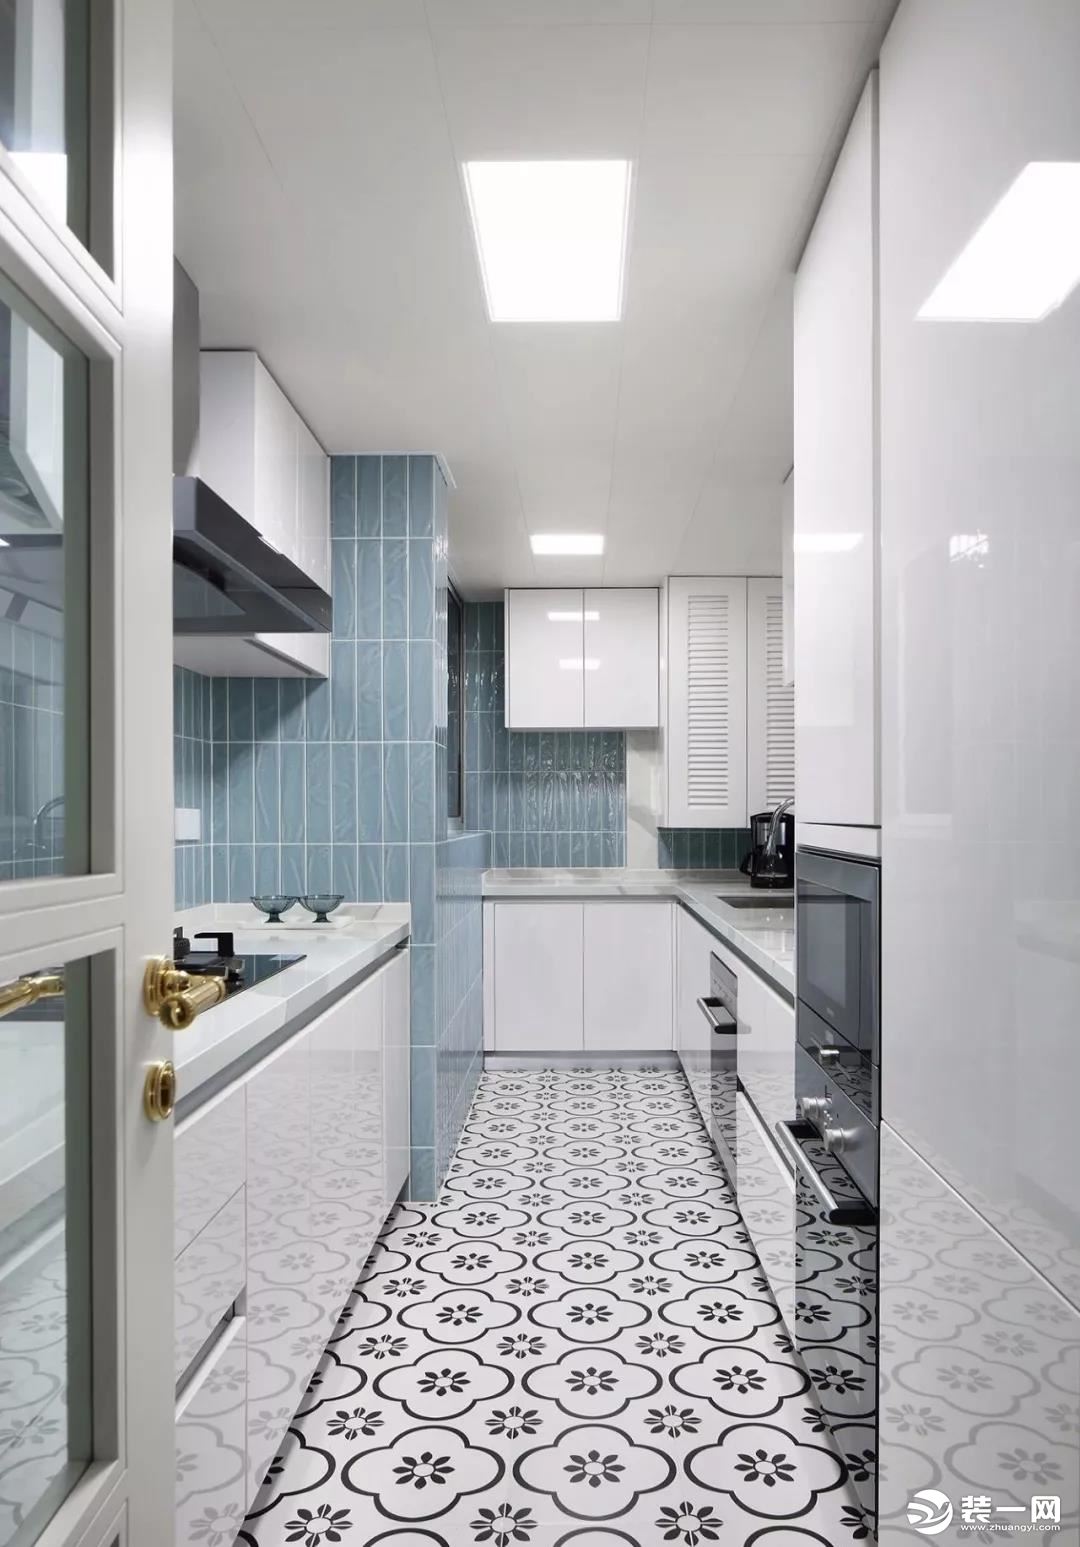 厨房的设计以小清新为主，地面铺贴黑白色的花砖，墙砖选择了蓝色系，L型的橱柜搭配另一侧的一字型橱柜